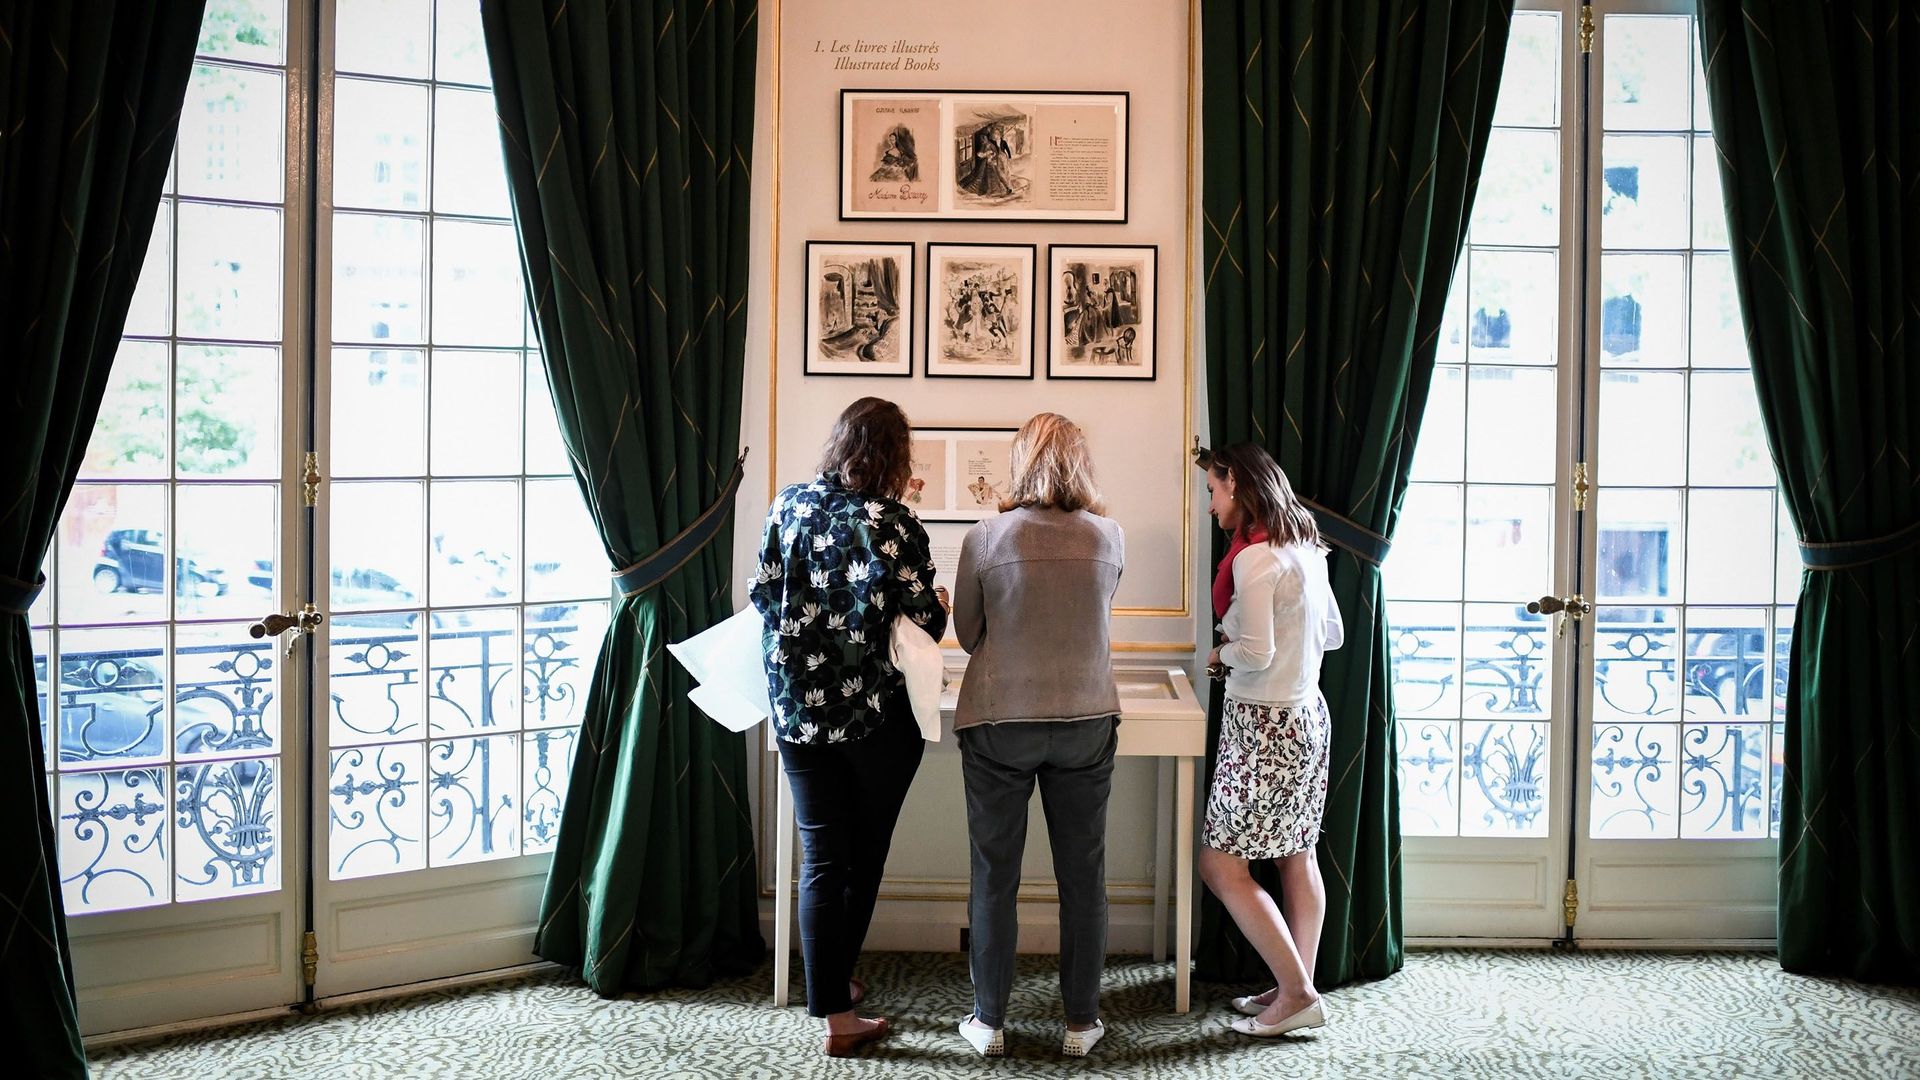 Le musée Yves Saint Laurent à Paris expose les dessins de jeunesse du couturier